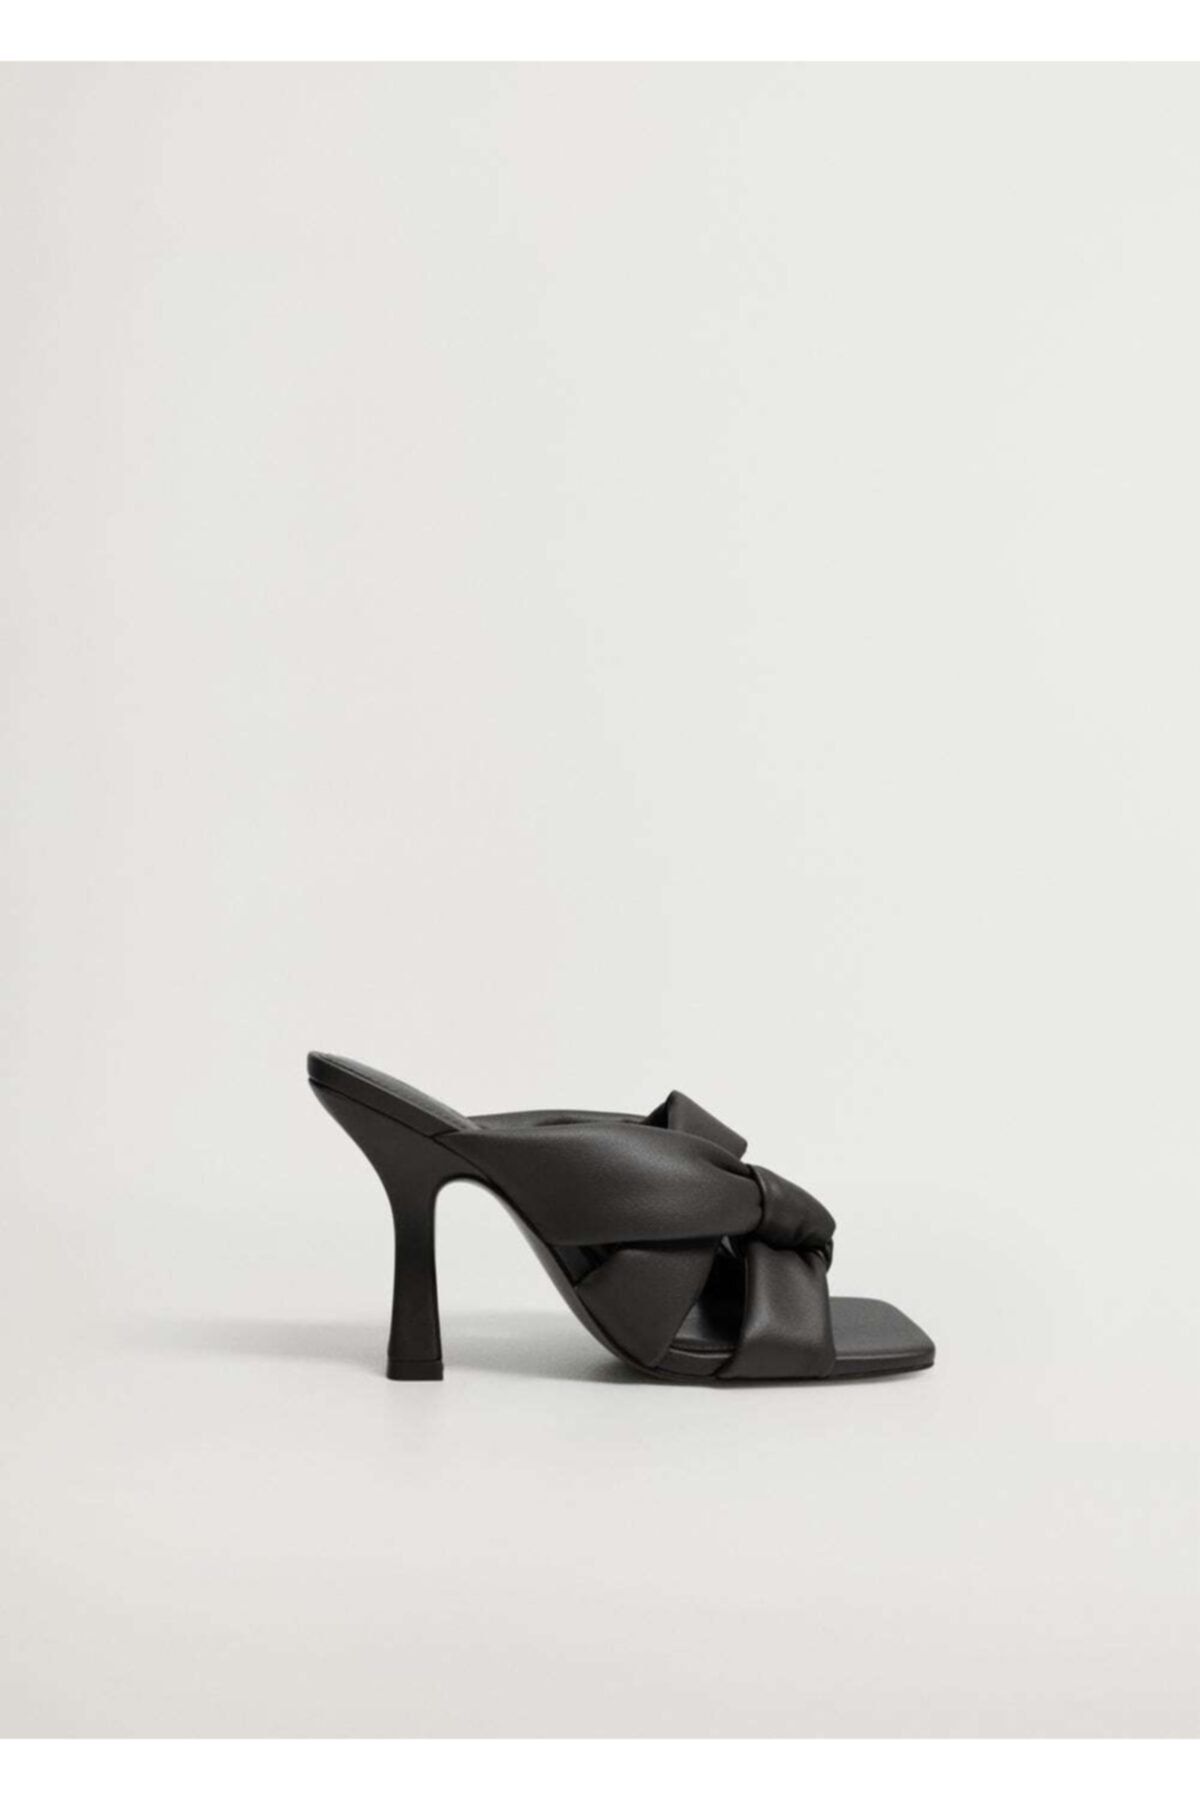 MANGO Kadın Siyah Düğüm Detaylı Topuklu Ayakkabı